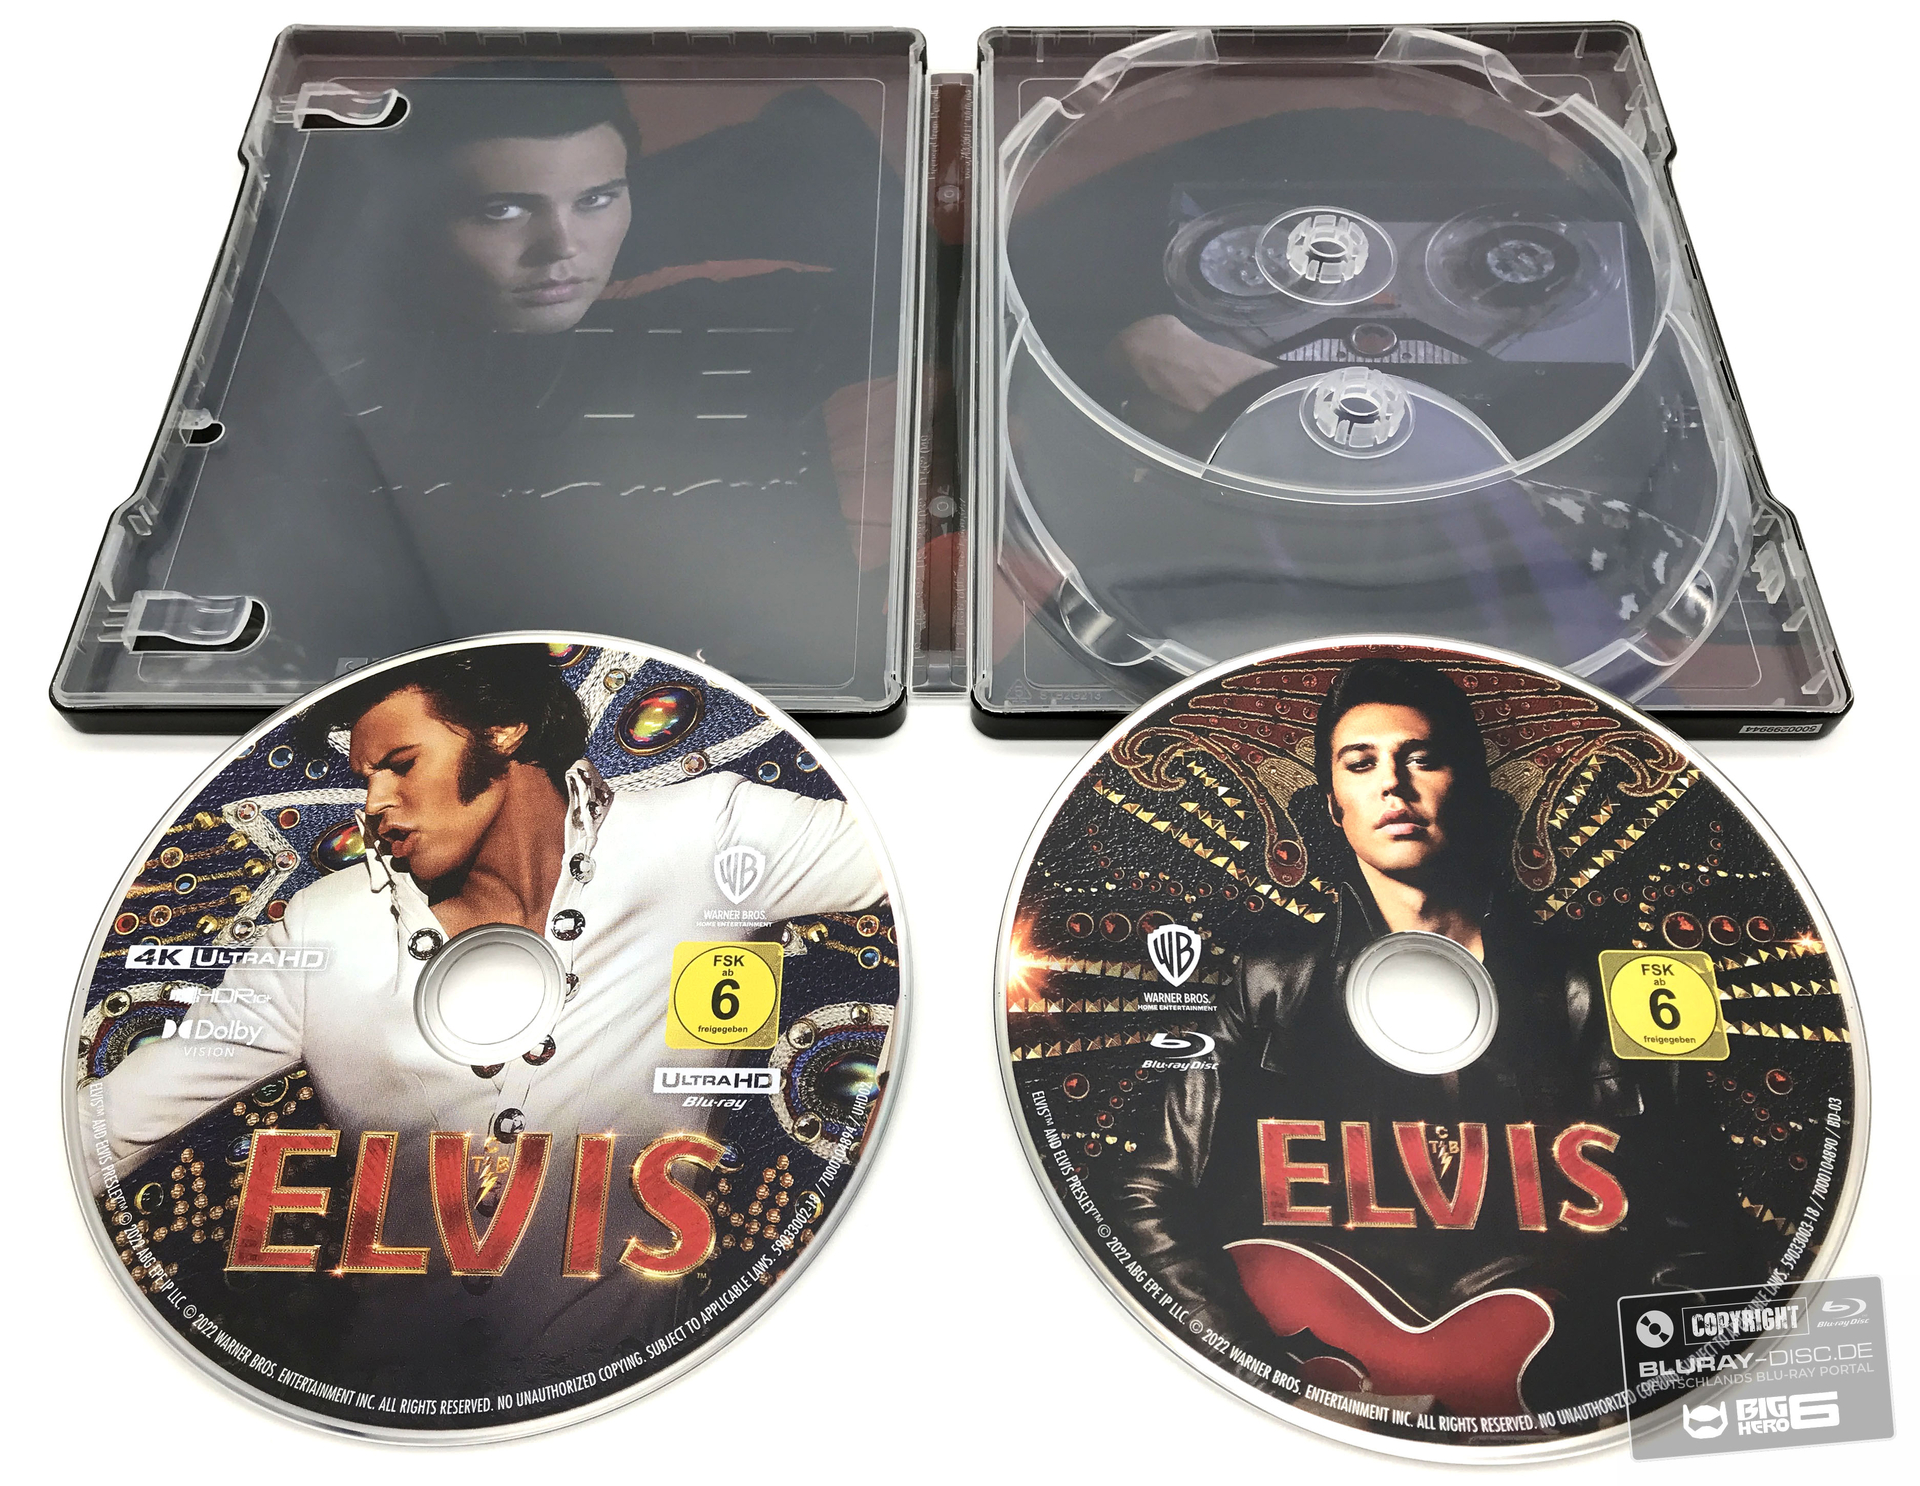 Elvis8_-_Kopie.jpg